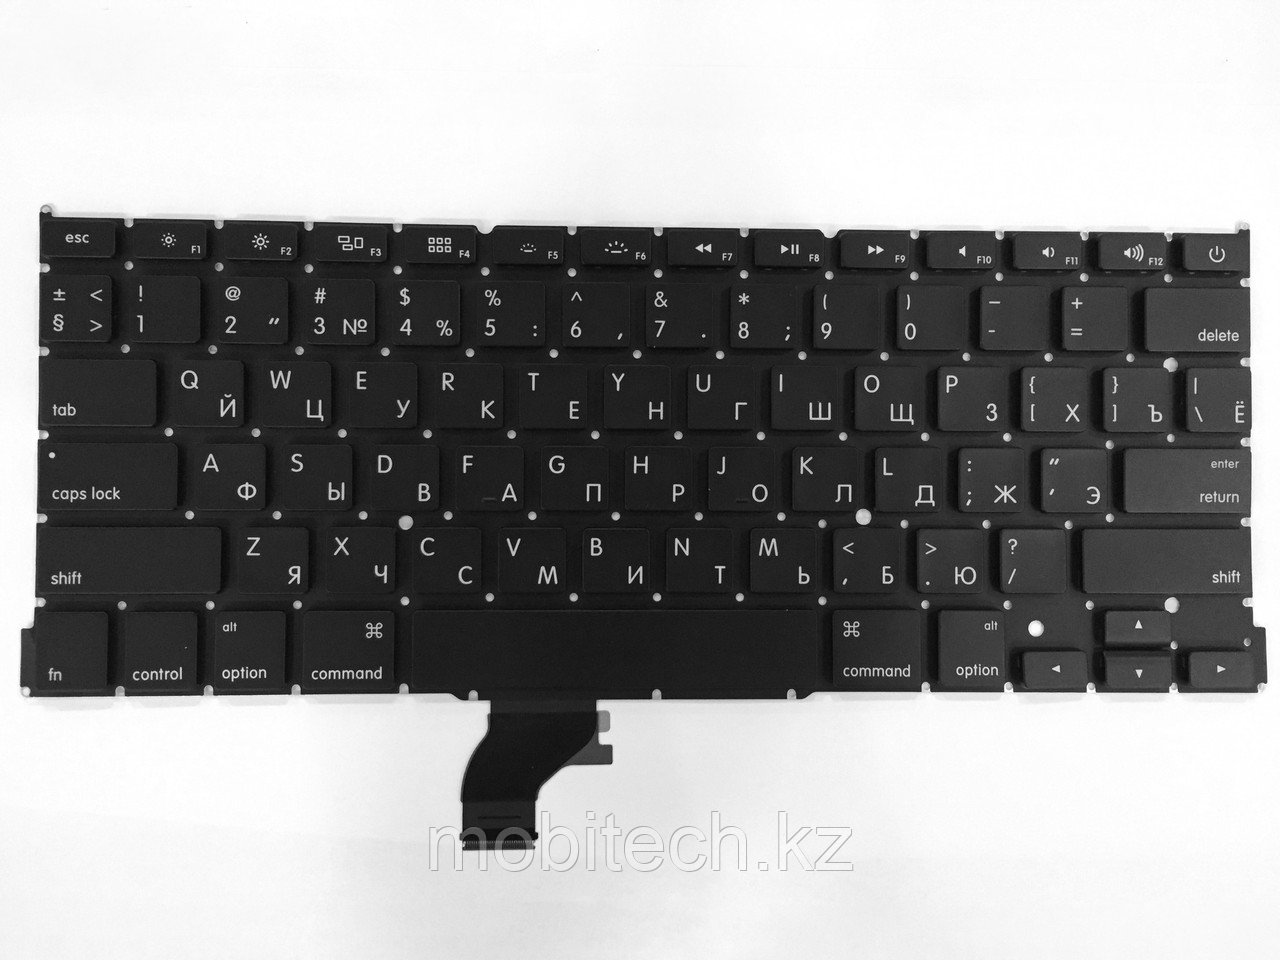 Клавиатуры Alma A1502 горизонтальный Enter клавиатура c EN/RU раскладкой